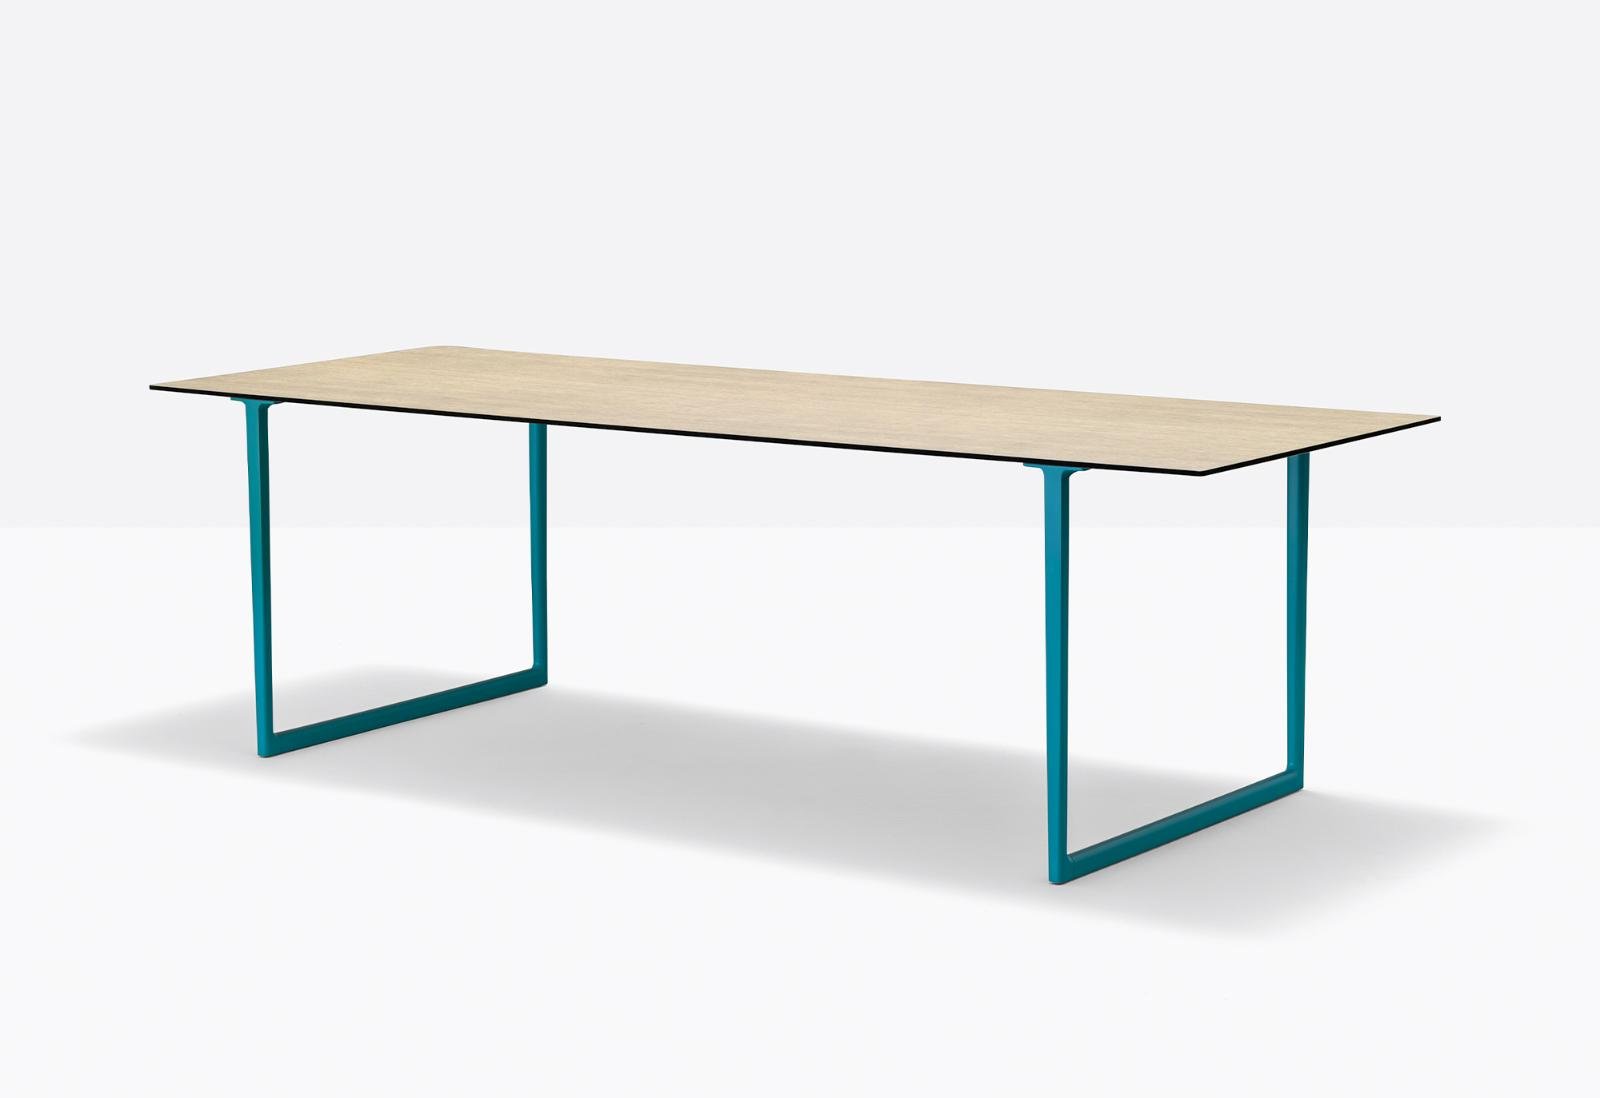 Toa Desk from Pedrali, designed by Robin Rizzini